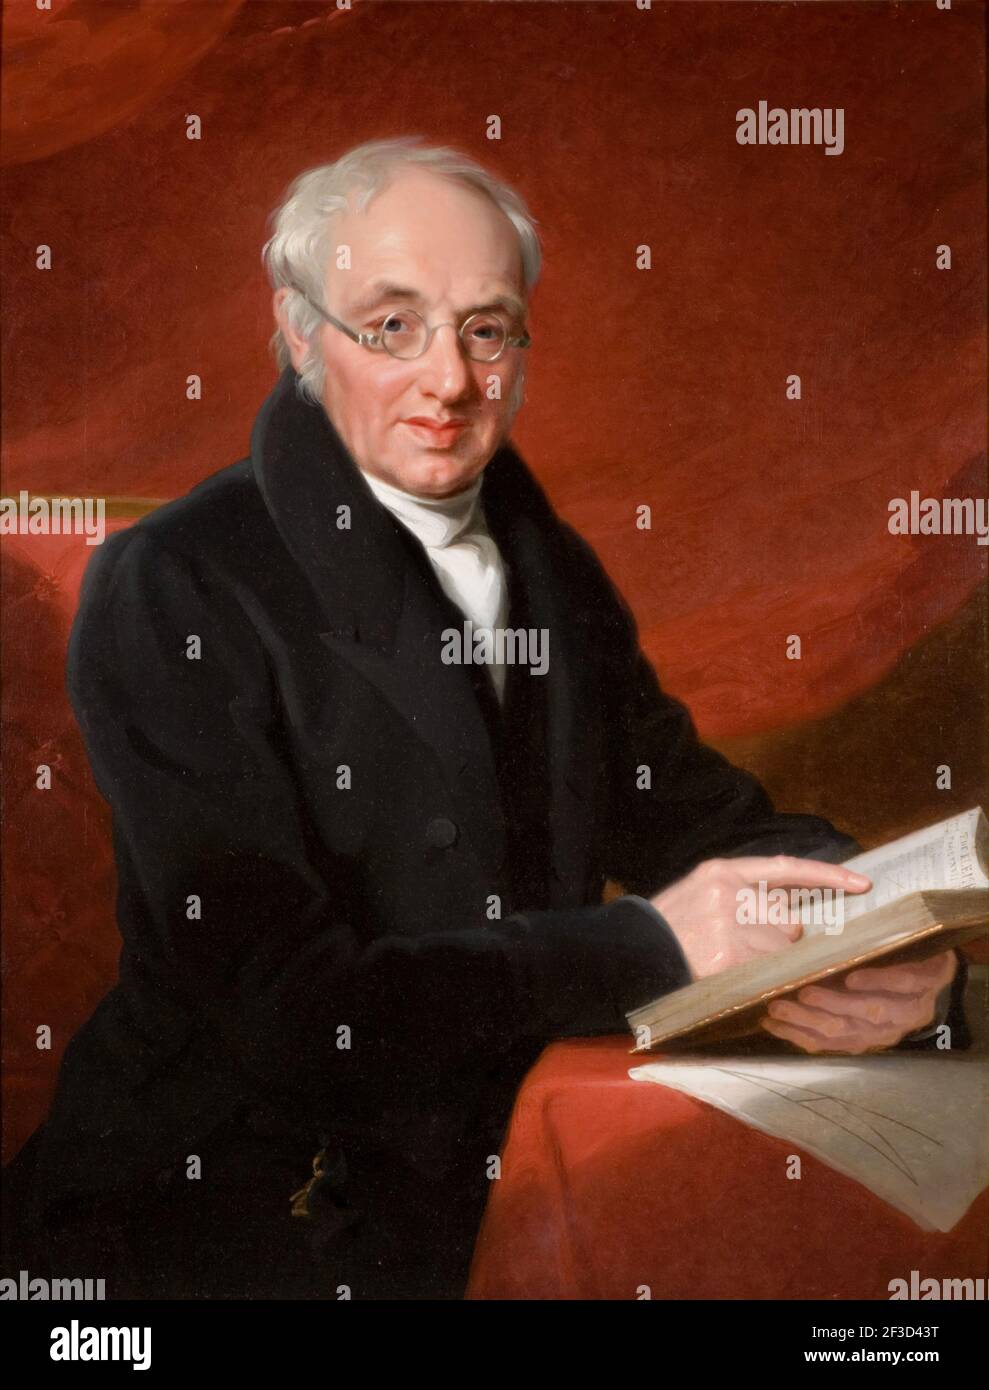 Porträt von Thomas Wright Hill, 1831. Thomas Wright Hill (geboren 1763 in Kidderminster -1851) war Mathematiker und Schulmeister. Ihm wird die Erfindung der einzigen übertragbaren Stimme im Jahr 1819 gutgeschrieben. Sein Sohn, Rowland Hill, war der Urheber des modernen Postsystems. Stockfoto